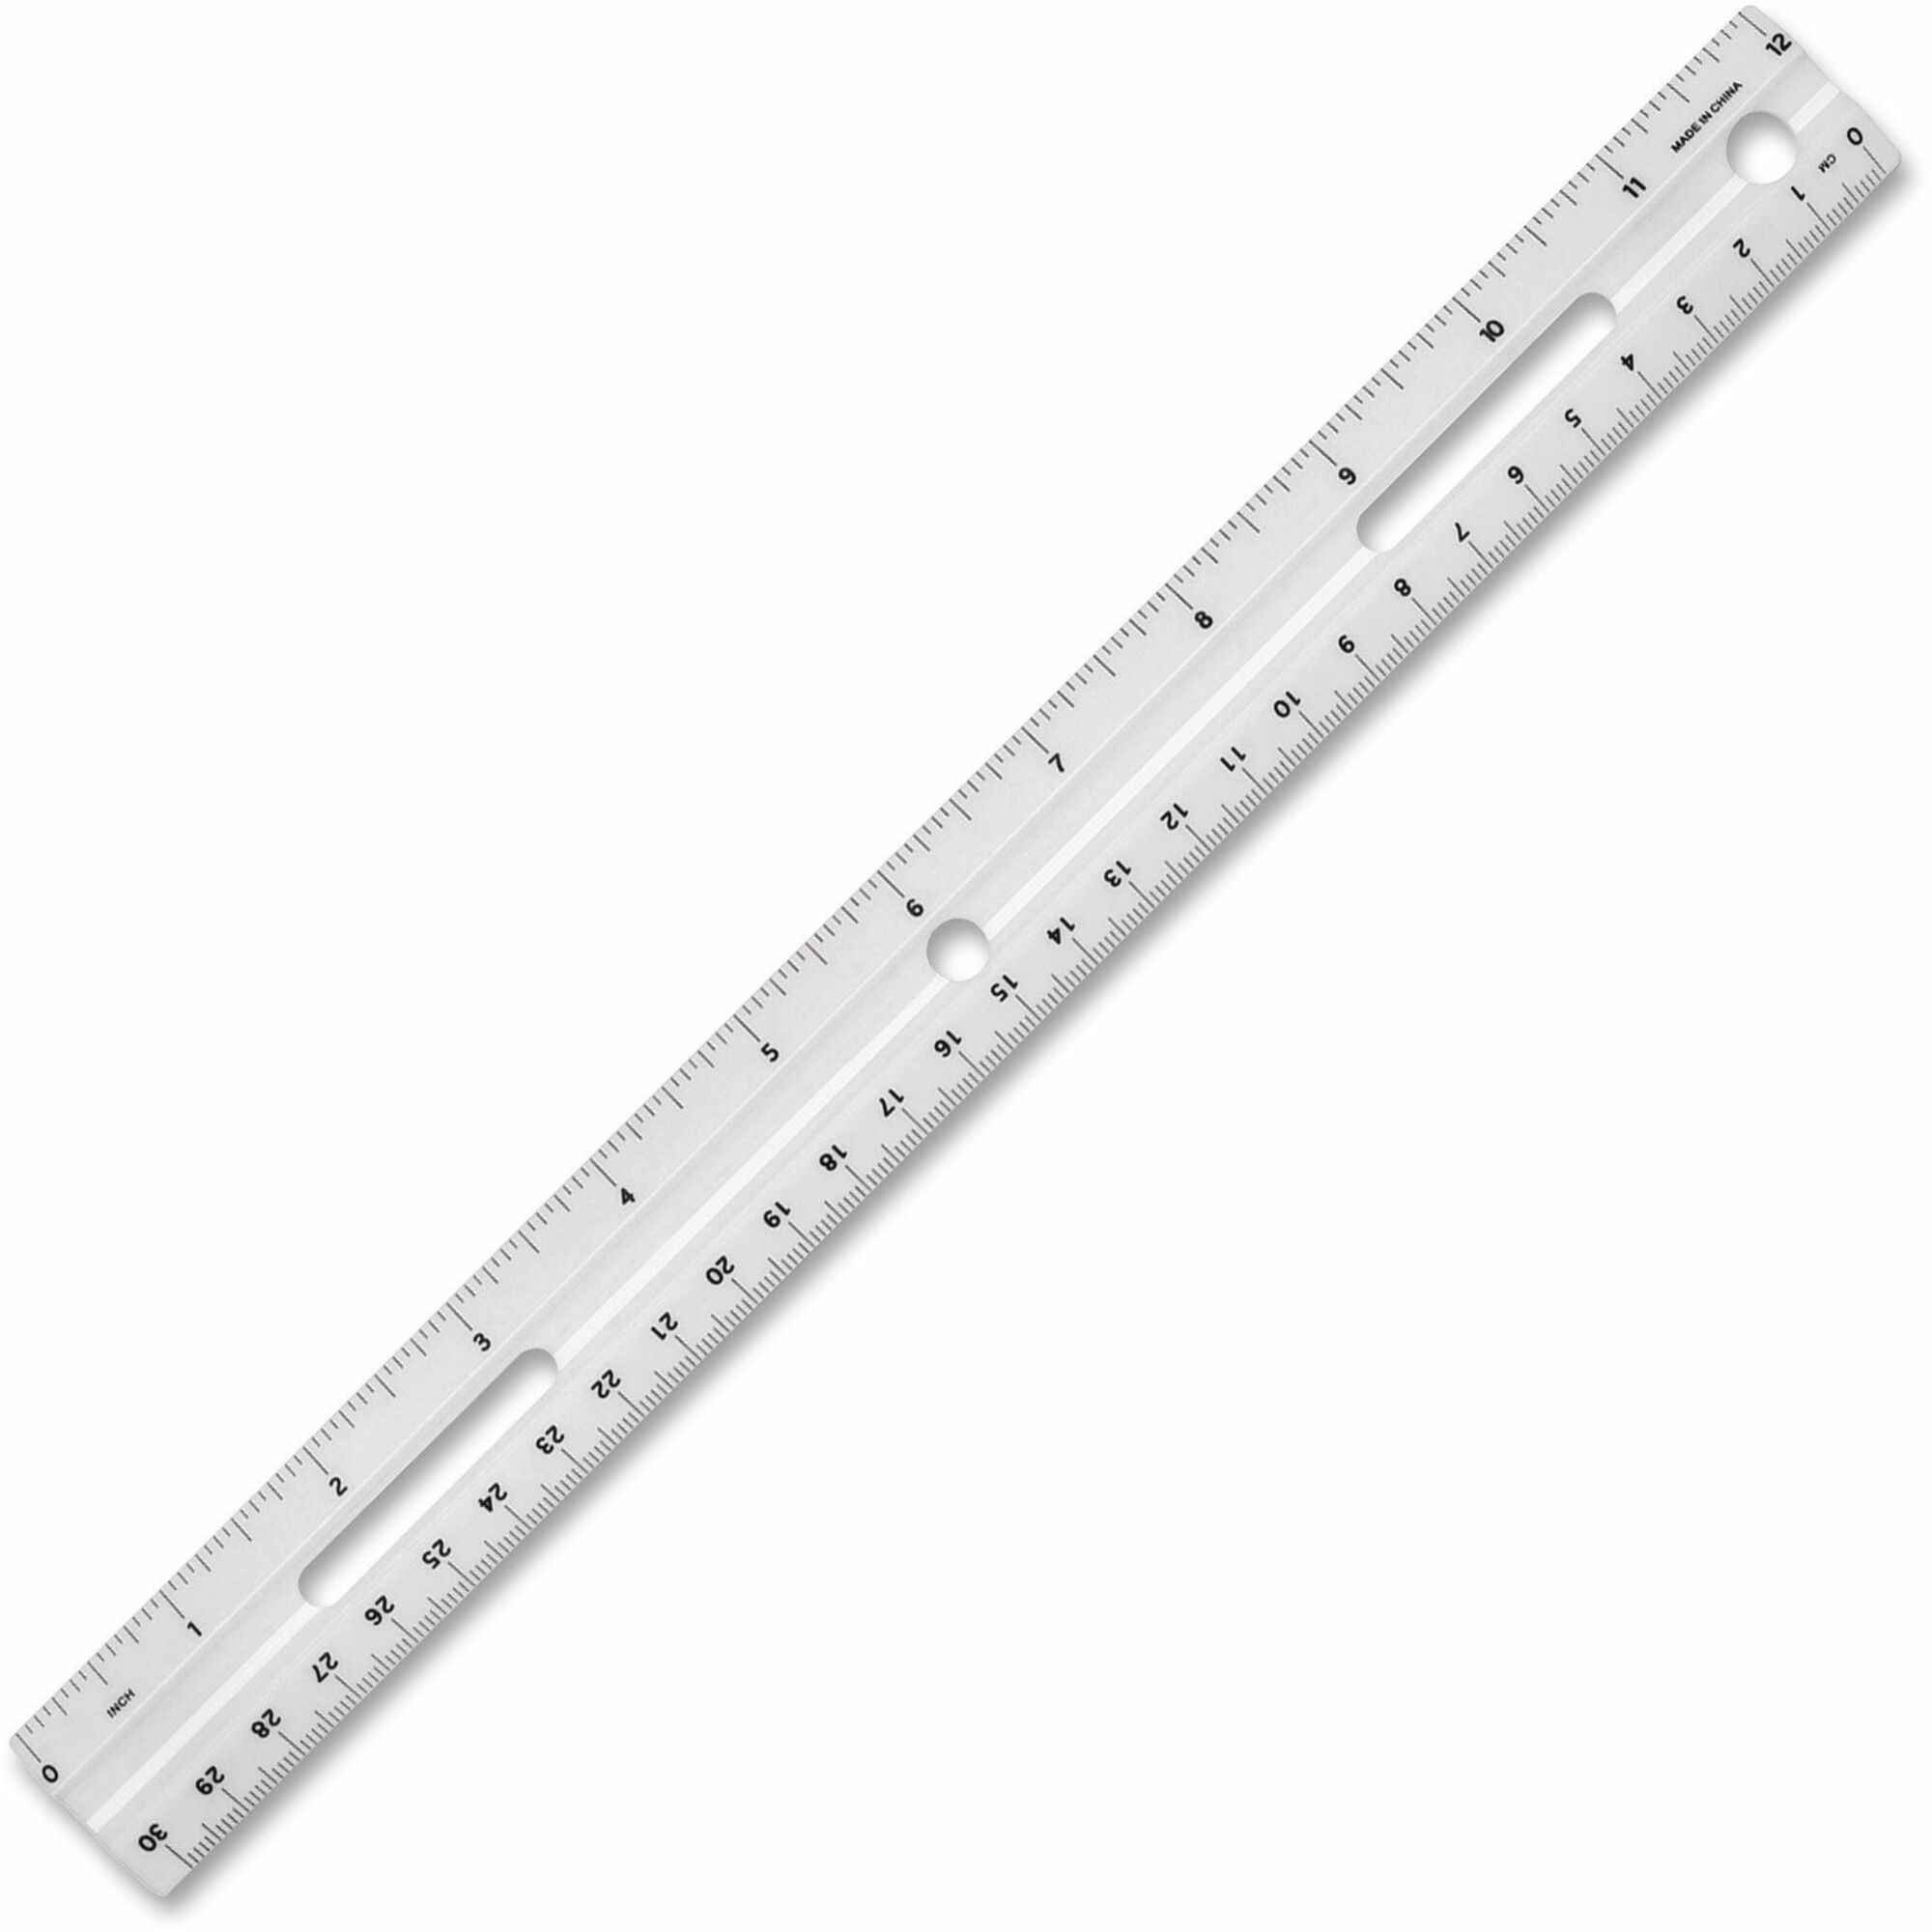 ruler tool to set actual lenght